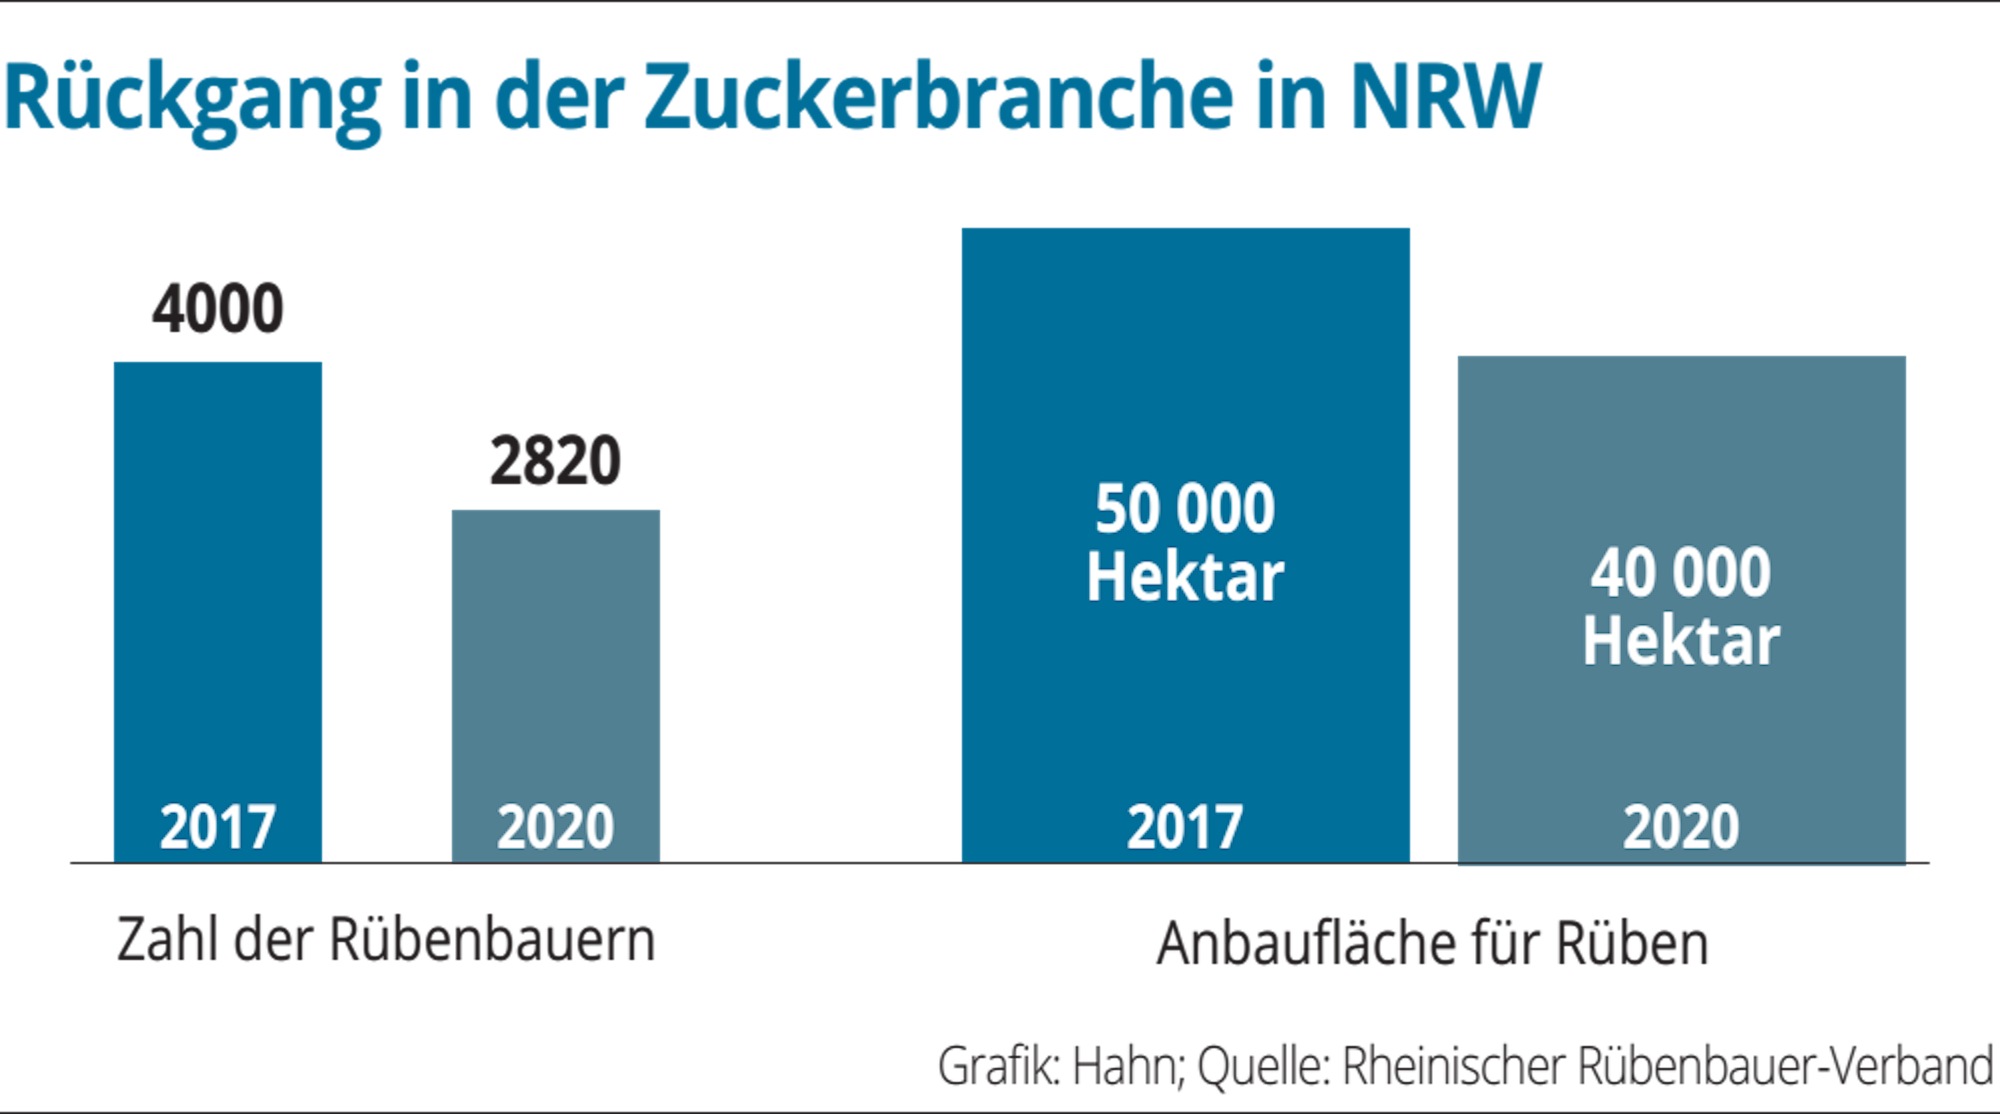 Der Rückgang in der Zuckerbranche in NRW lässt sich an der Zahl der Rübenbauer und der Anbaufläche ablesen.